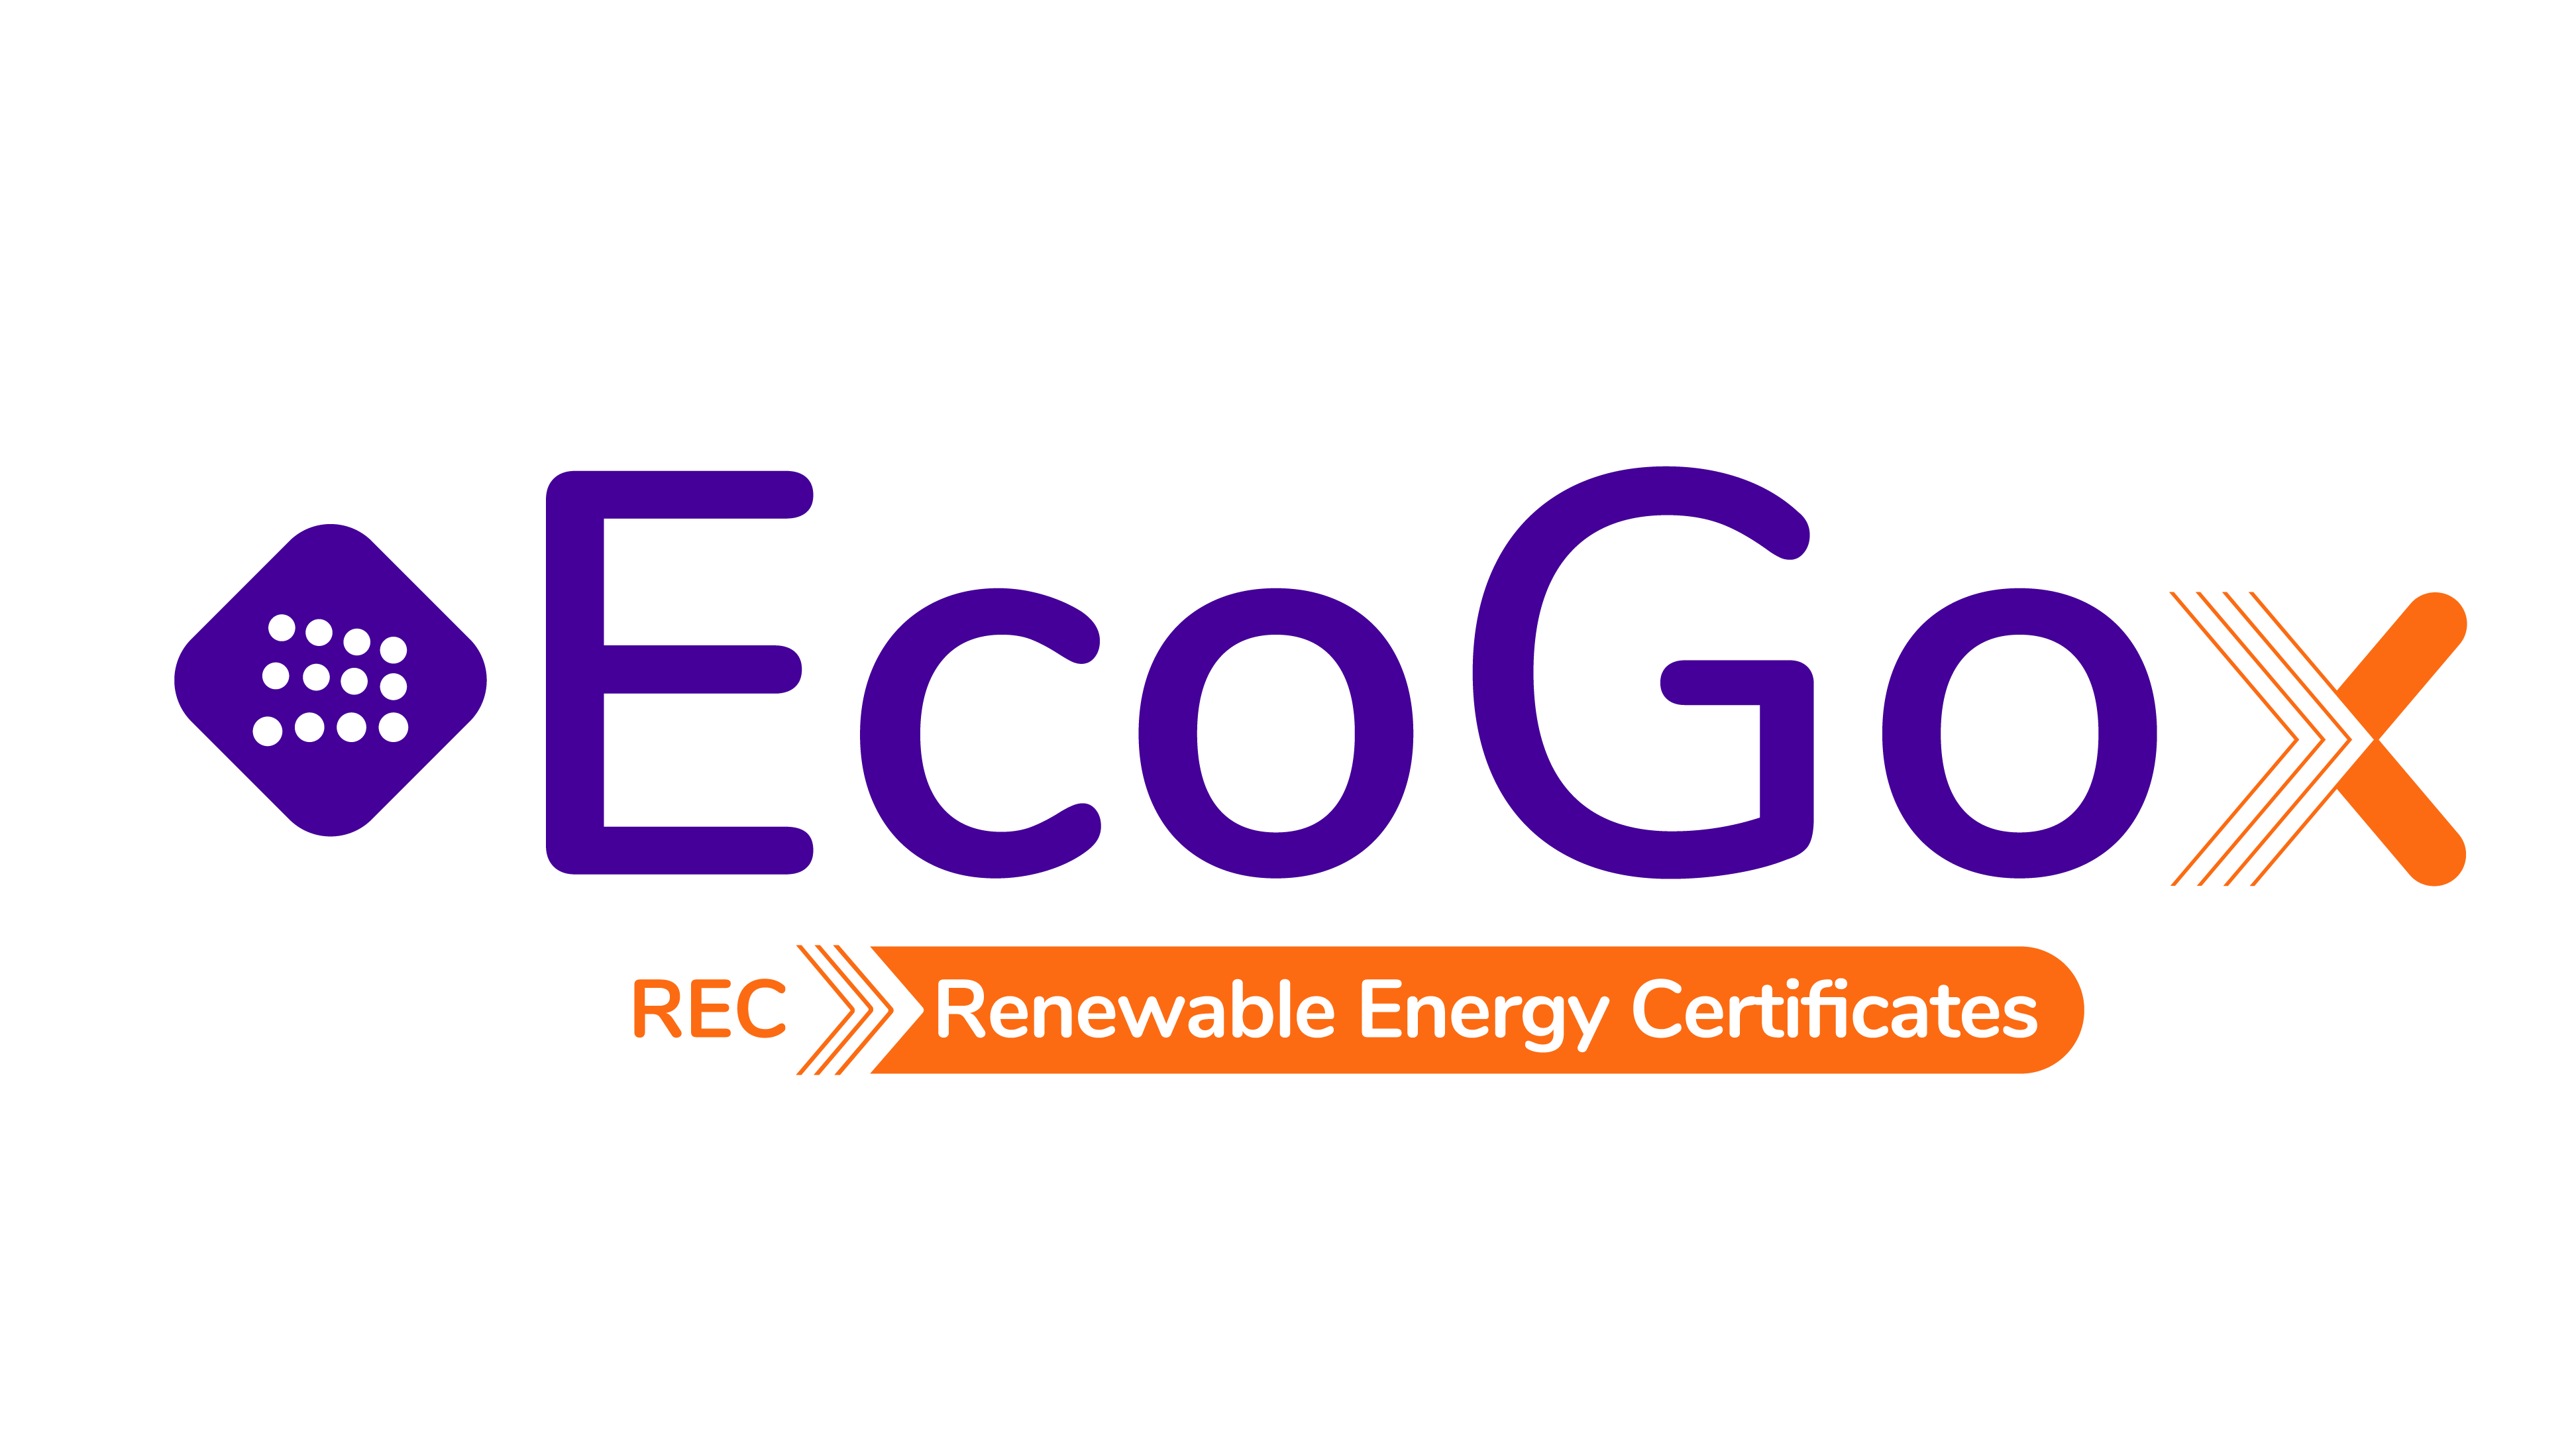 EcoGox